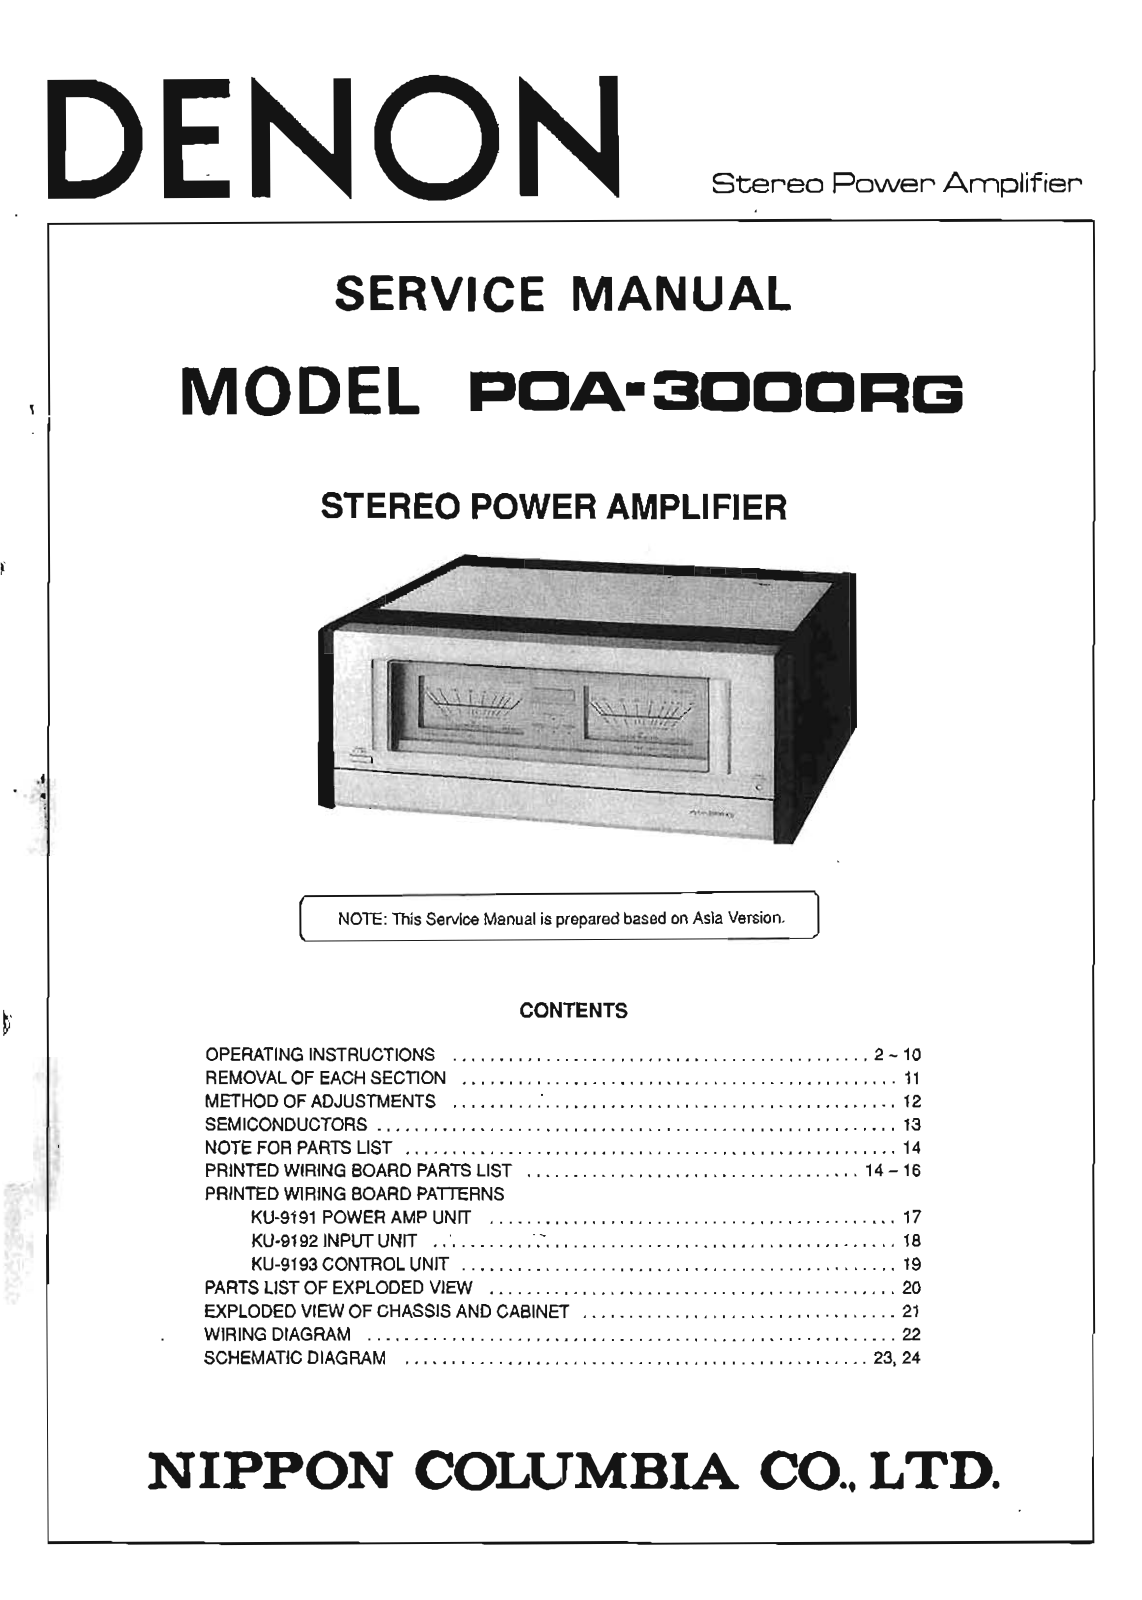 Denon POA-3000RG Service Manual